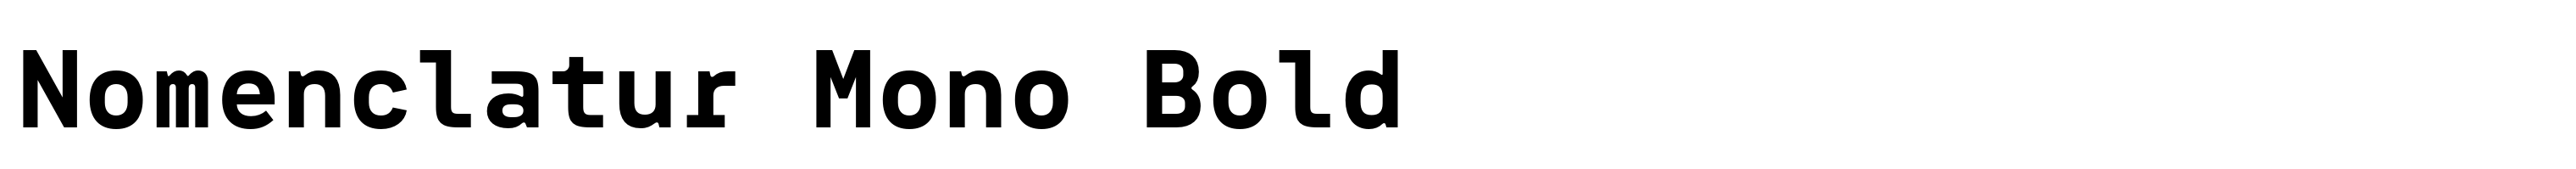 Nomenclatur Mono Bold